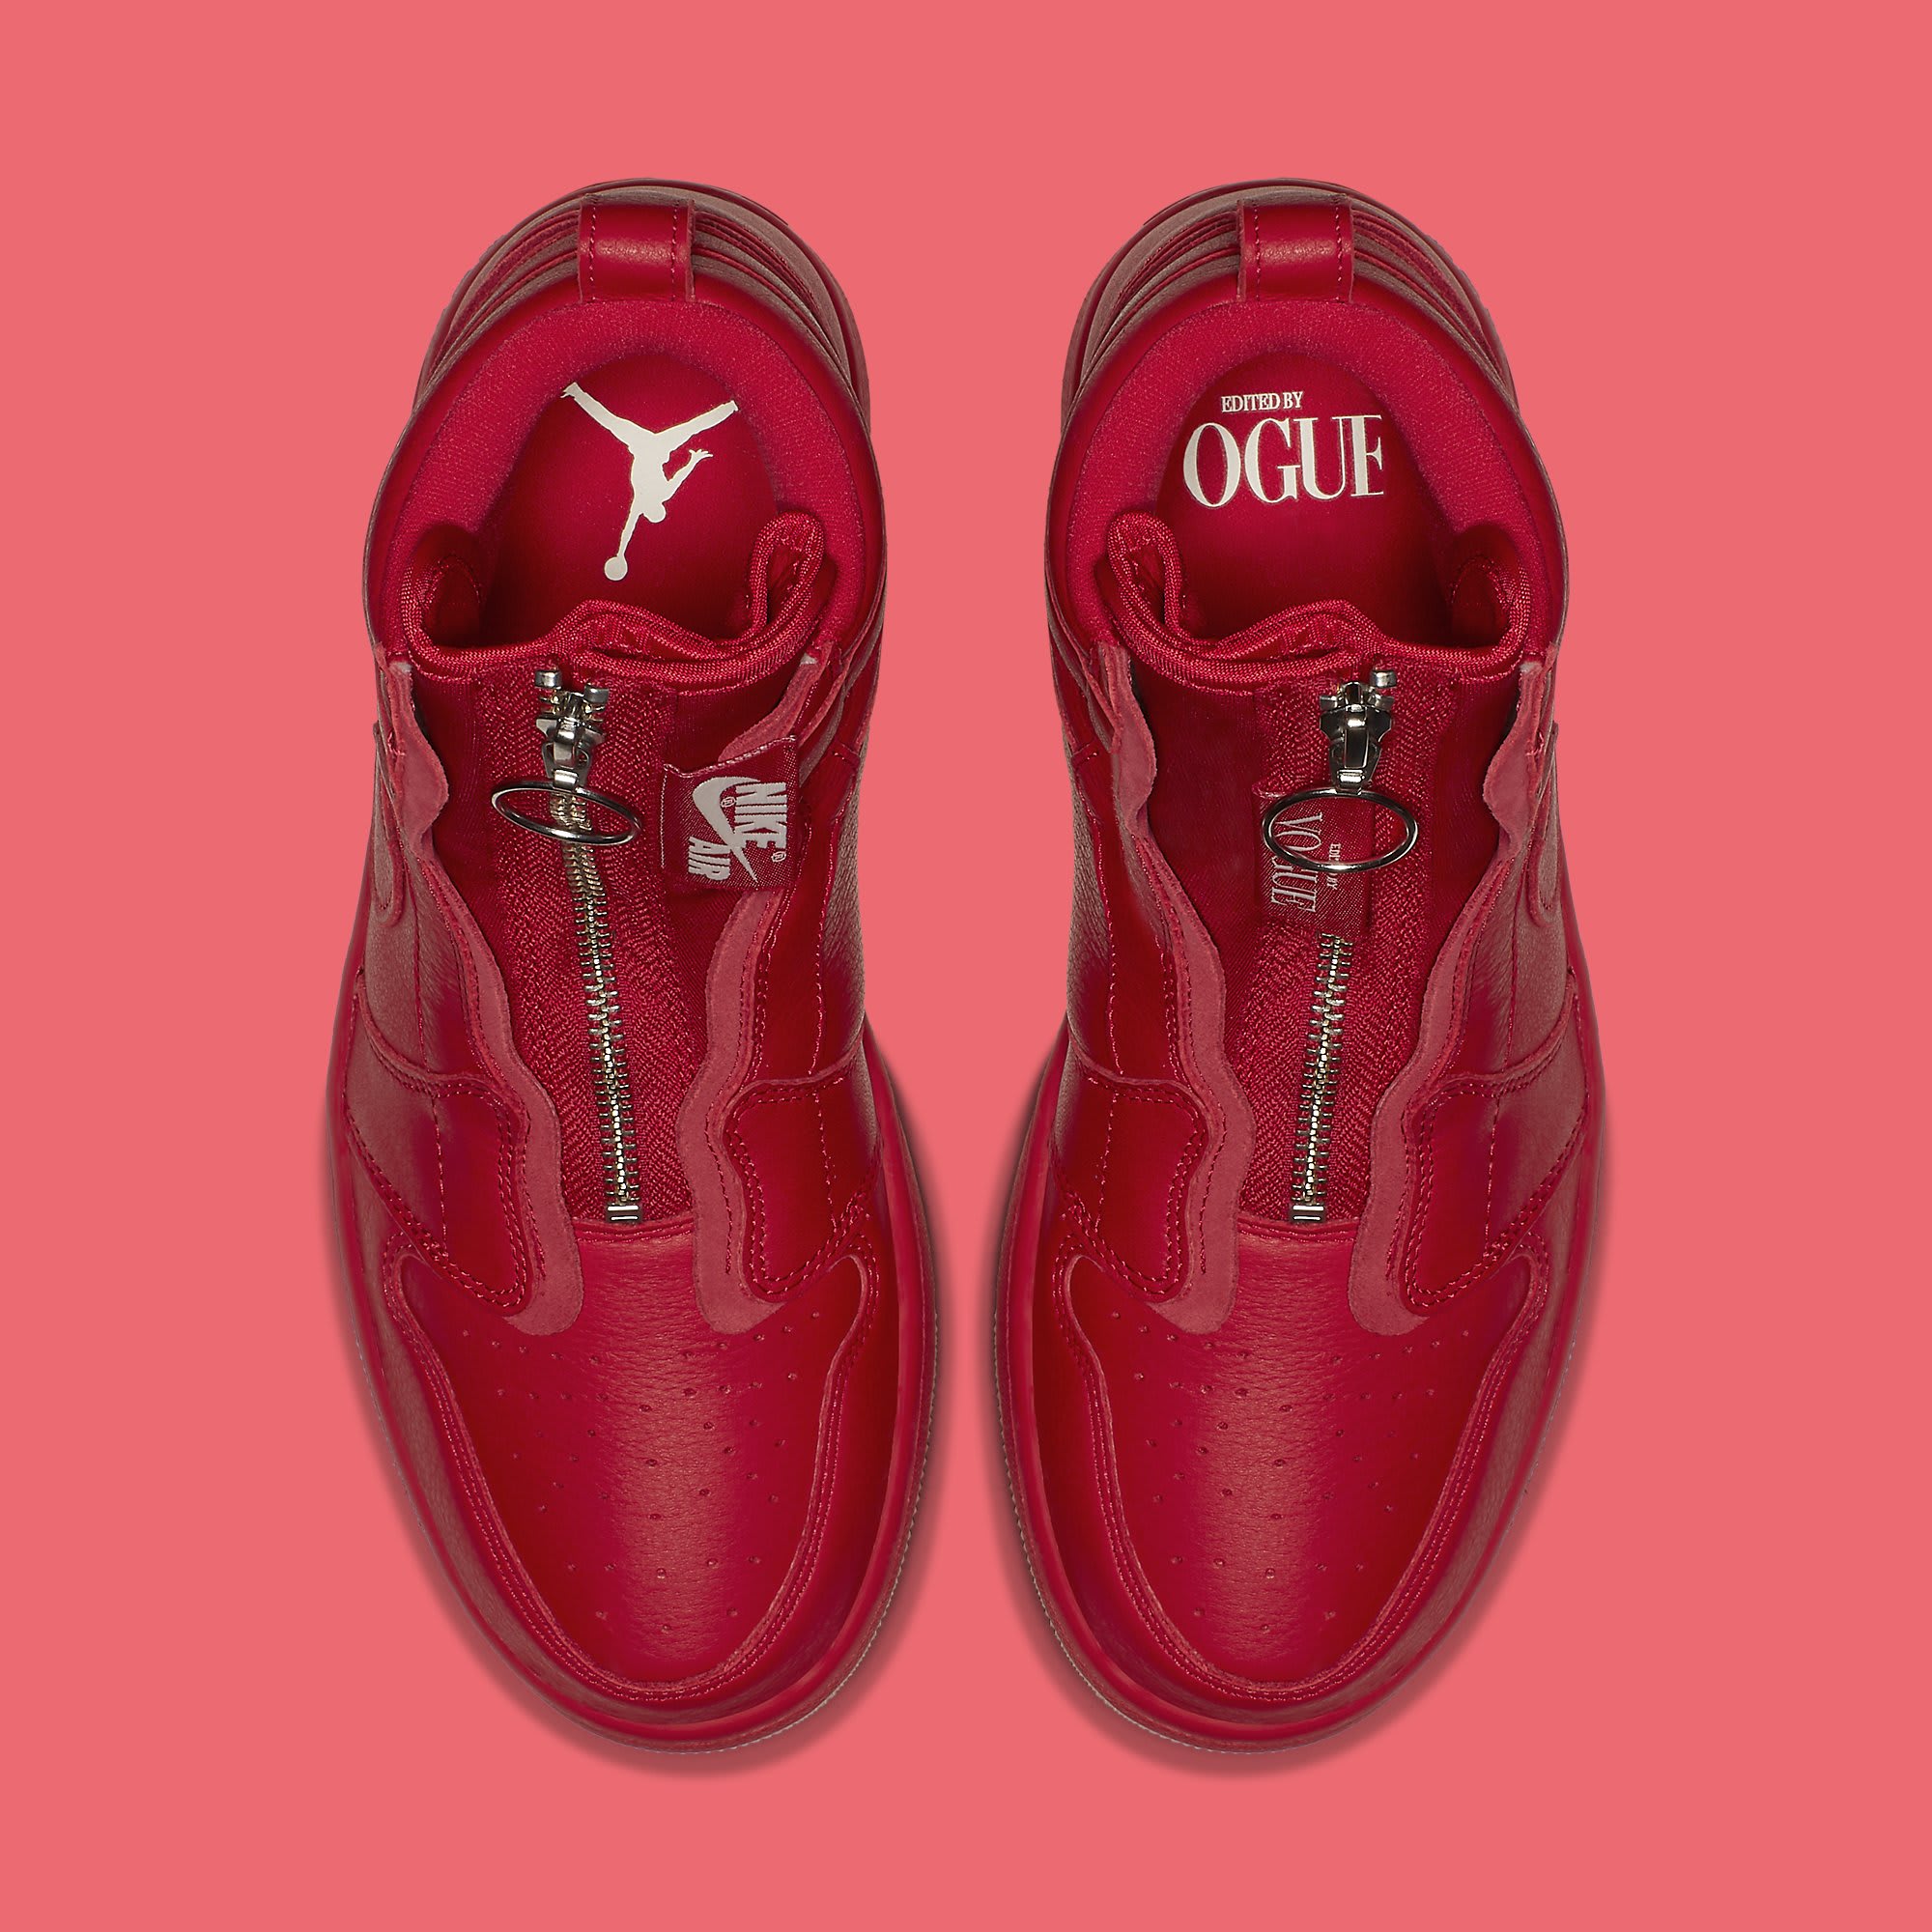 Vogue x Air Jordan 1 Zip AWOK University Red Top